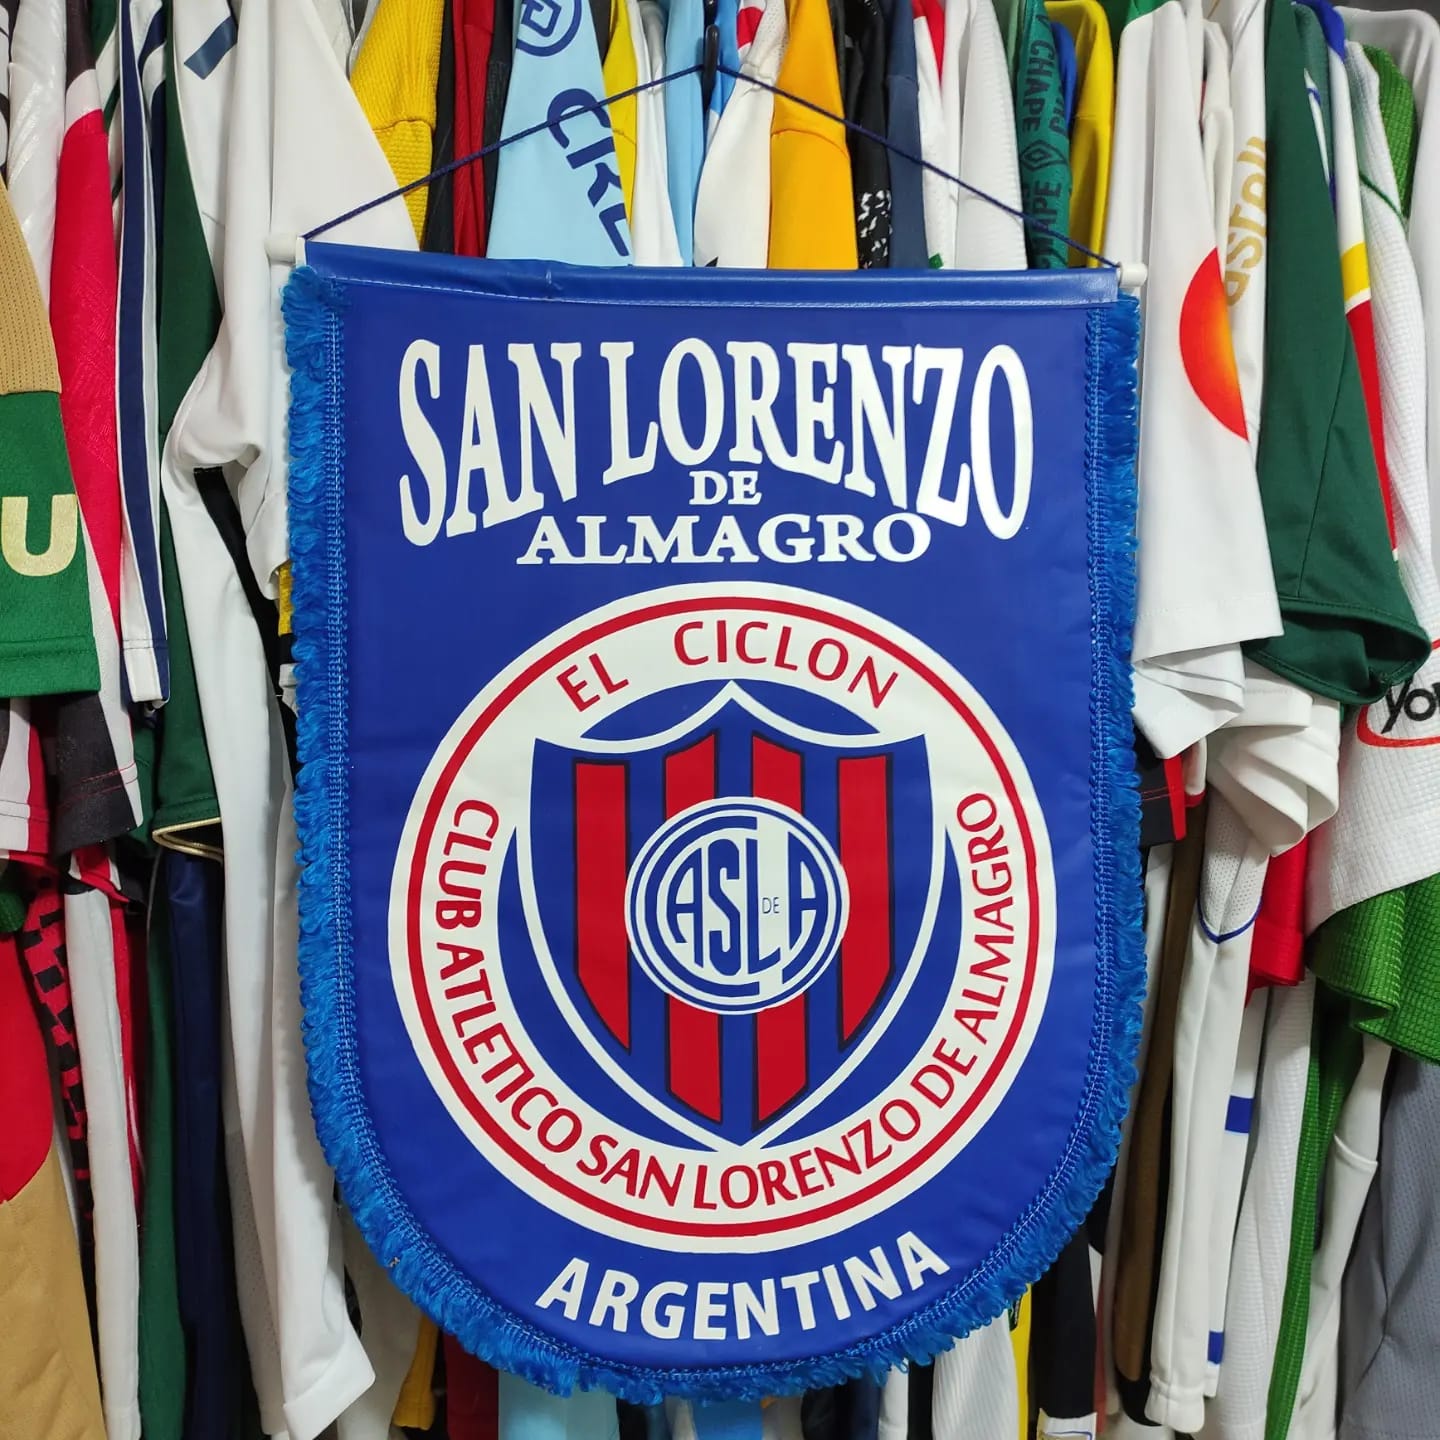 Club Atletico San Lorenzo de Almagro, Logopedia